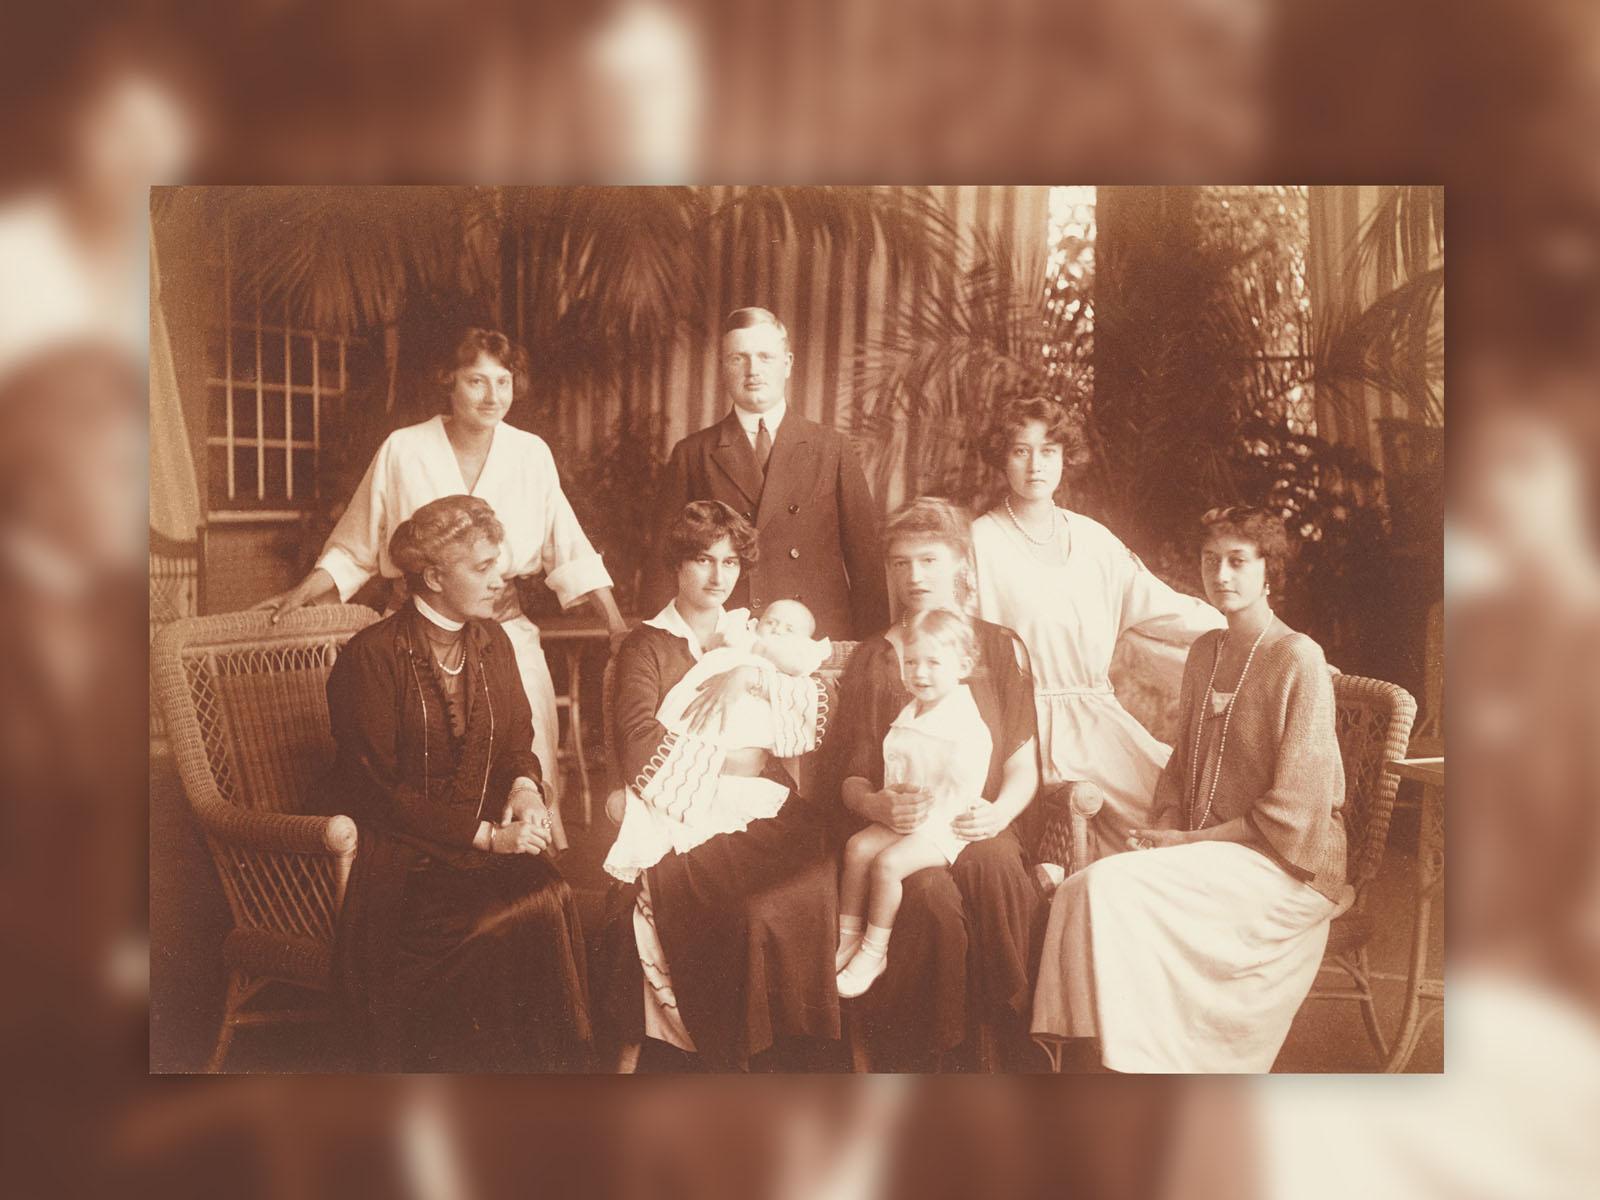 Photographie de famille datant de 1922 au château de Hohenburg